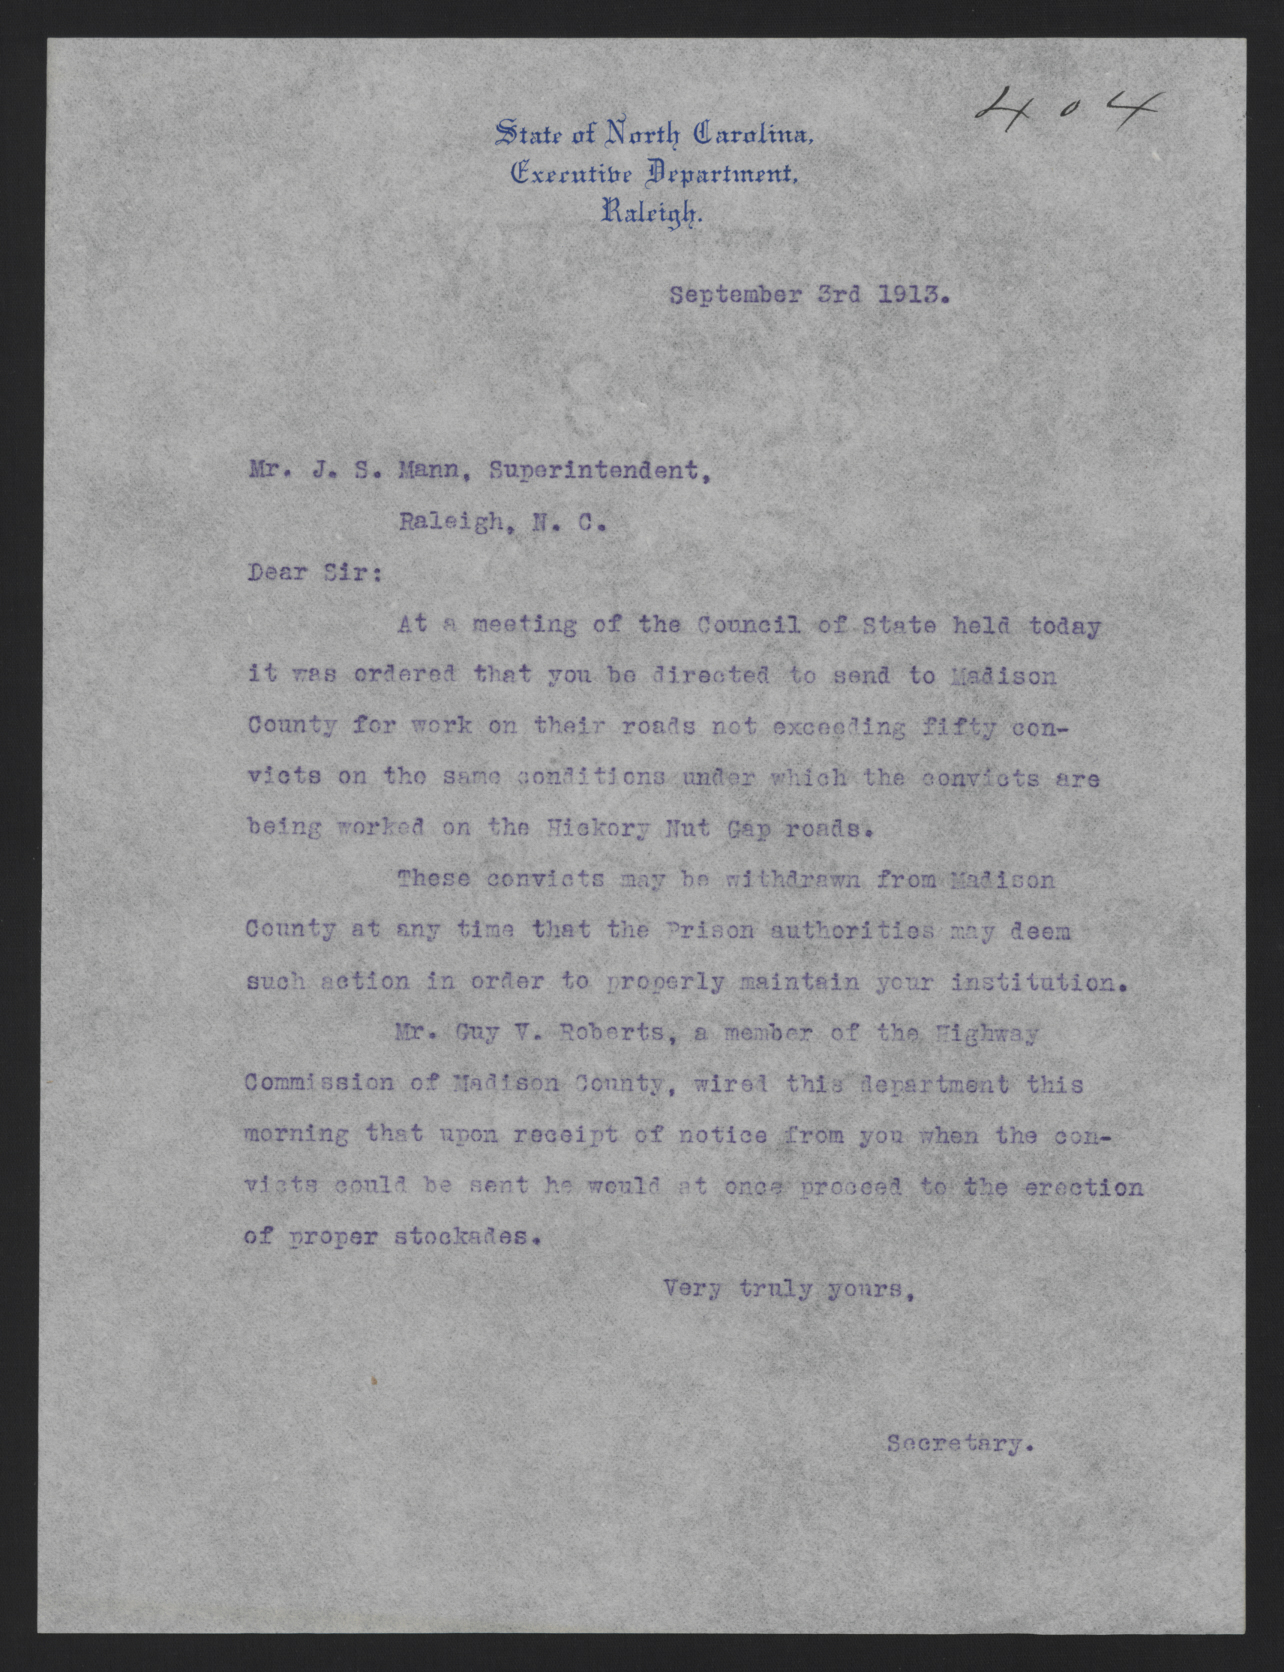 Letter from Kerr to Mann, September 3, 1913